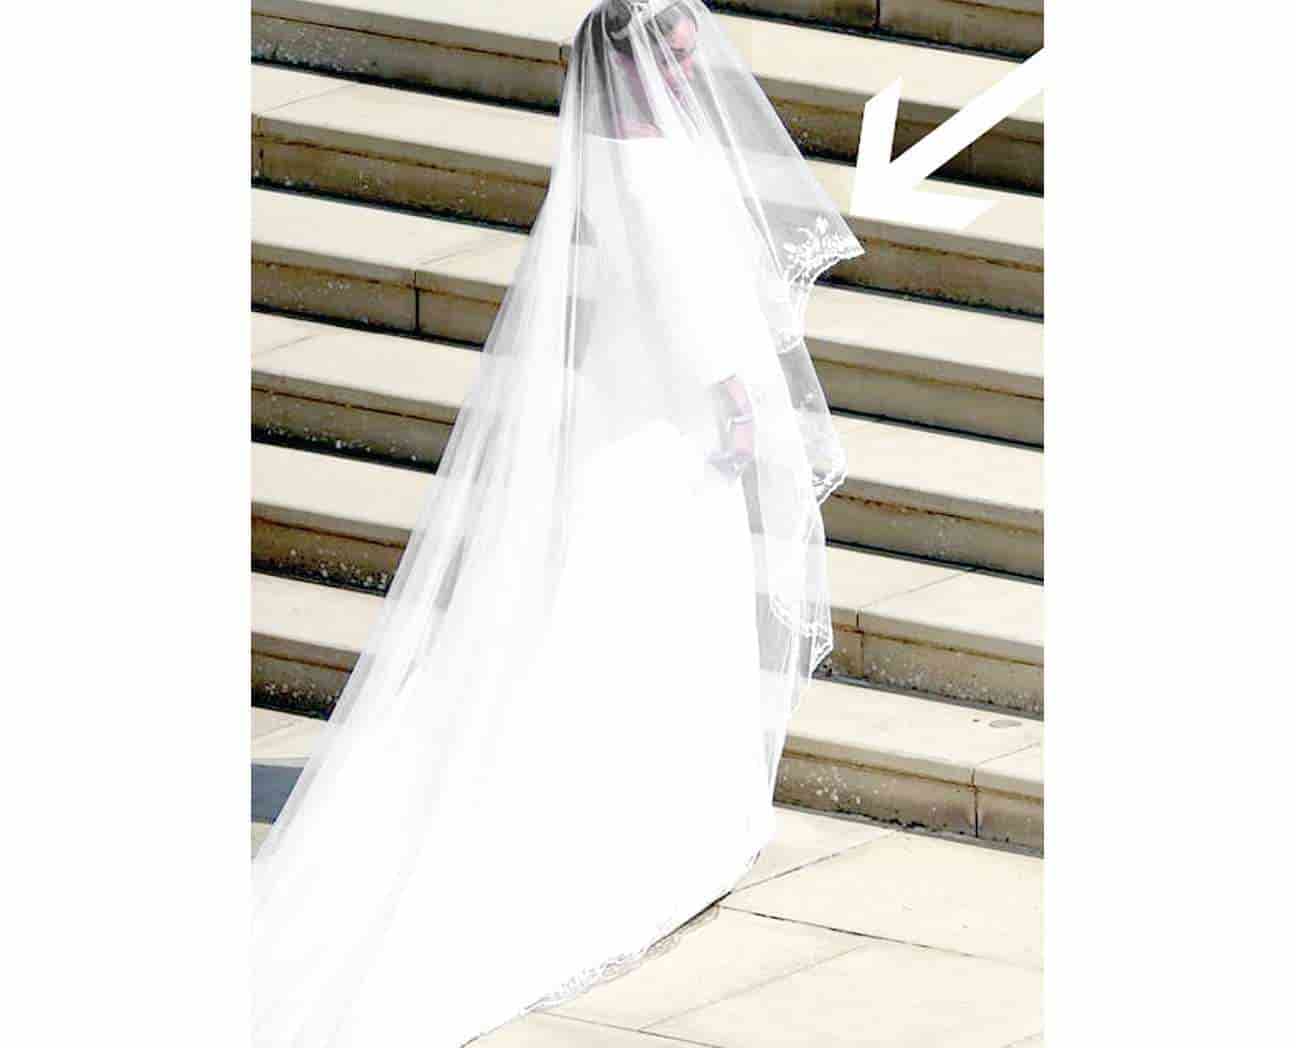 Realeza ocultó 'detalles' en sus vestidos de novia